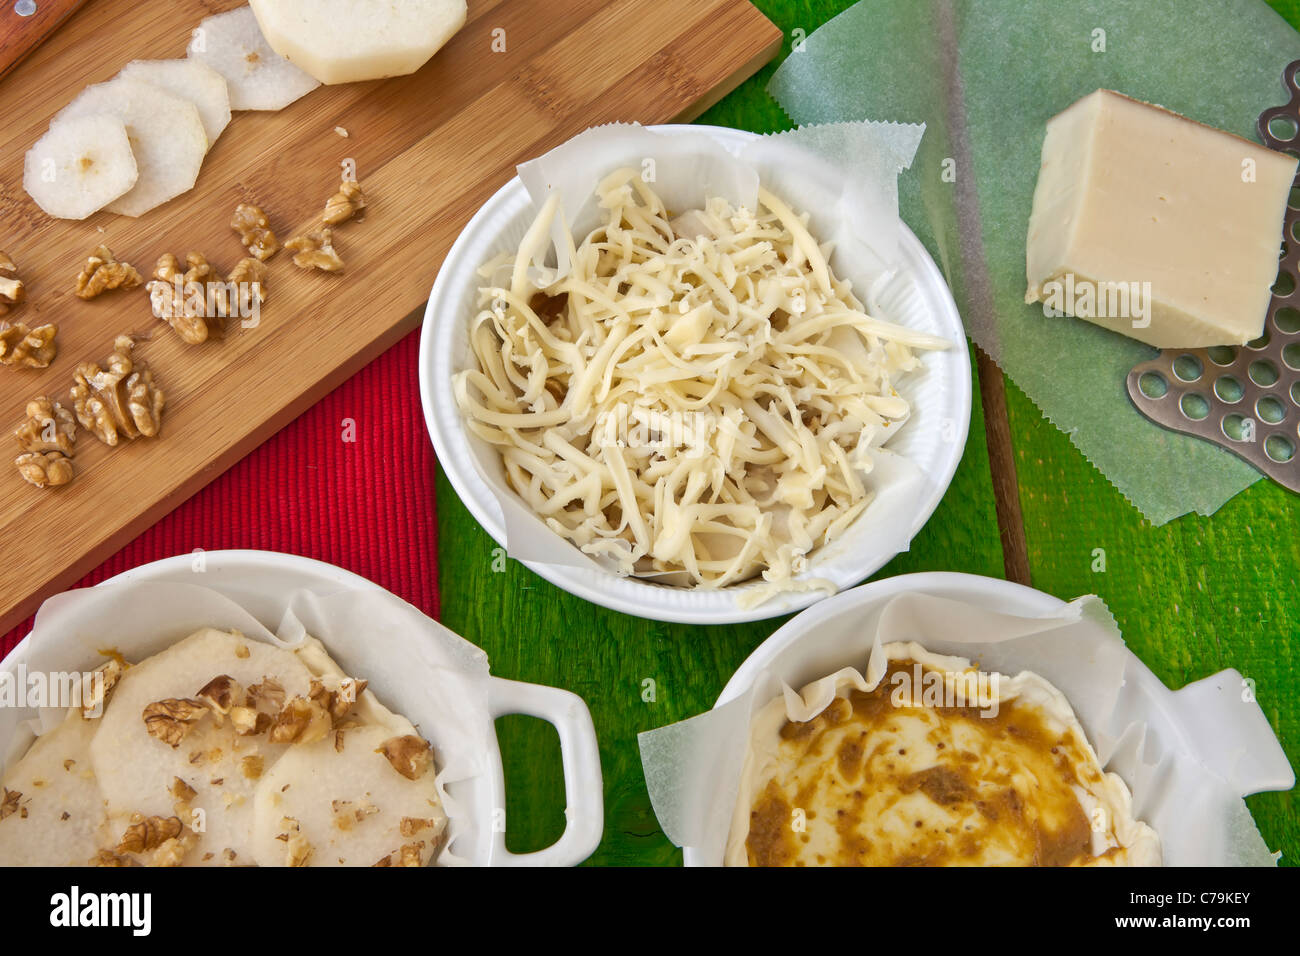 Fig moutarde, les poires et les noix sur la pâte feuilletée et recouverte de fromage Vacherin. Banque D'Images